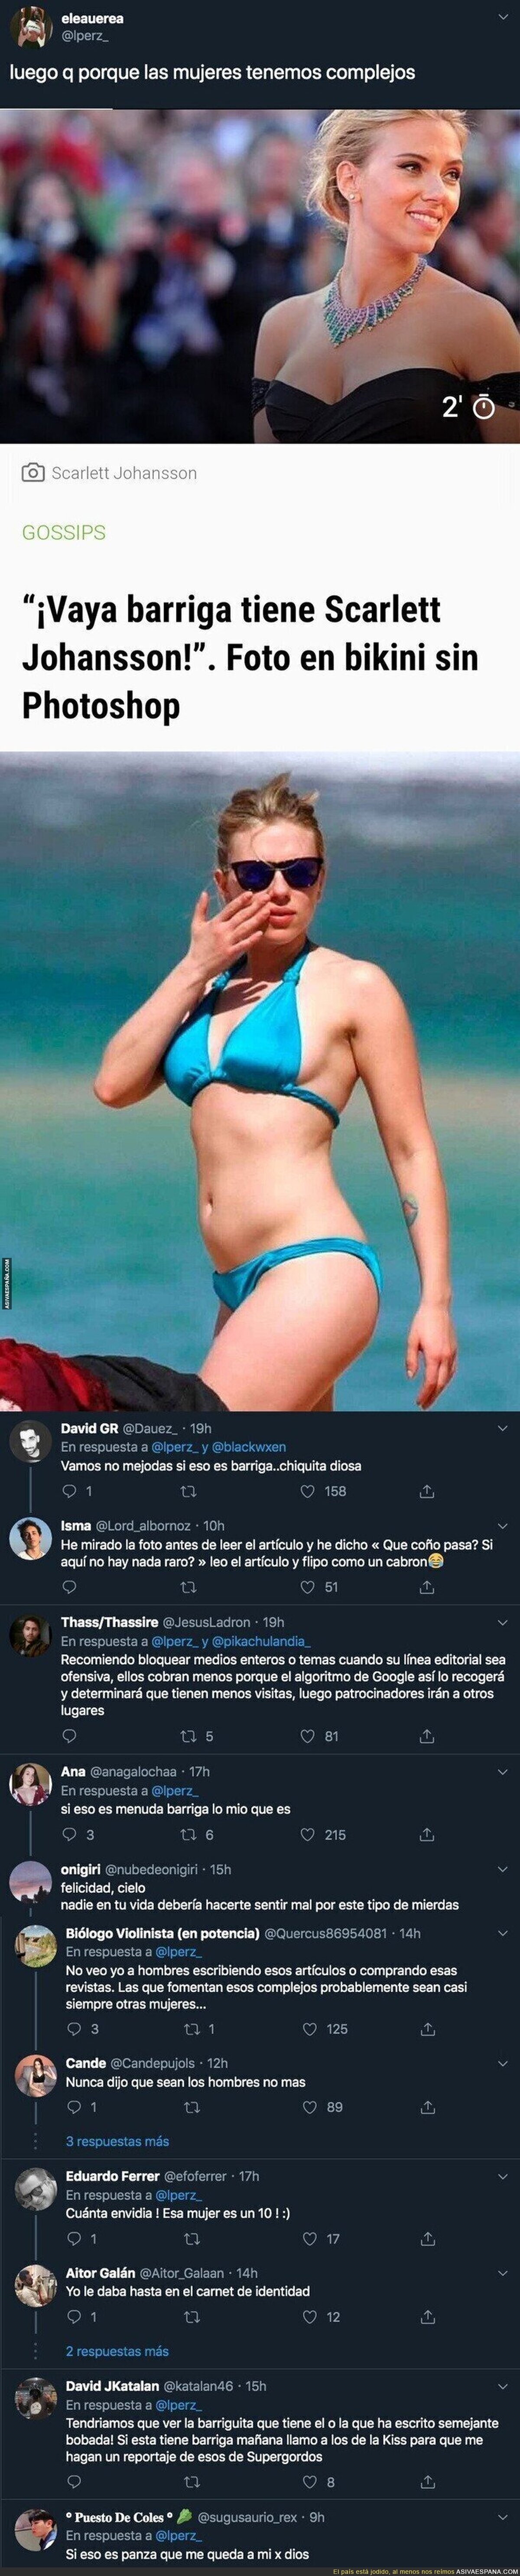 El lamentable artículo de 'diarioGOL' hablando que Scarlett Johansson tiene una barriga enorme adjuntando esta foto en la playa